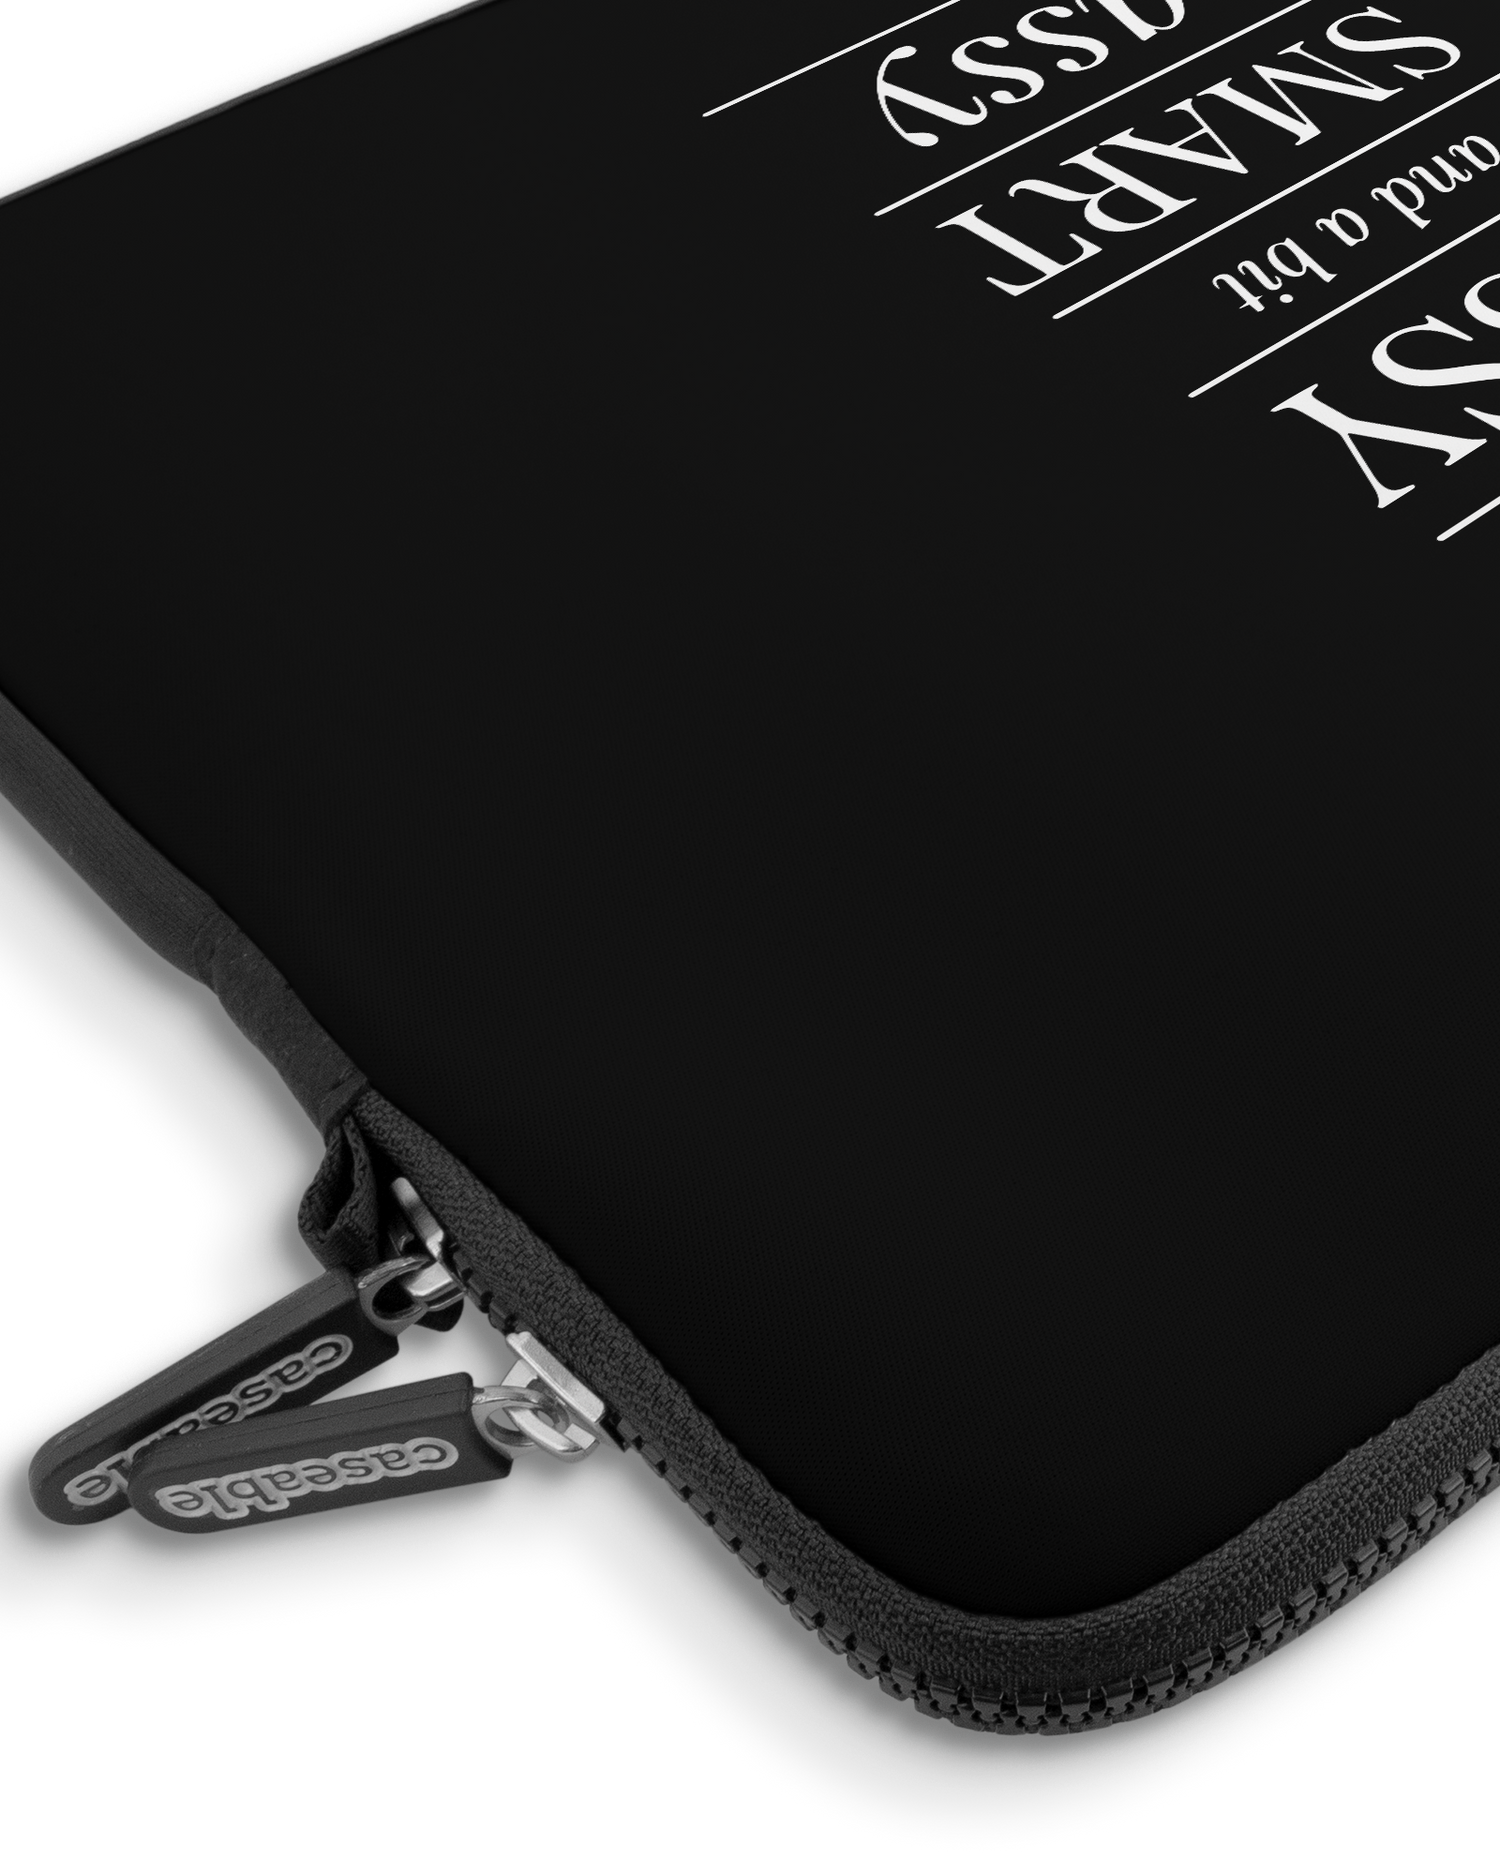 Classy Sassy Premium Laptoptasche 15 Zoll mit Gerät im Inneren